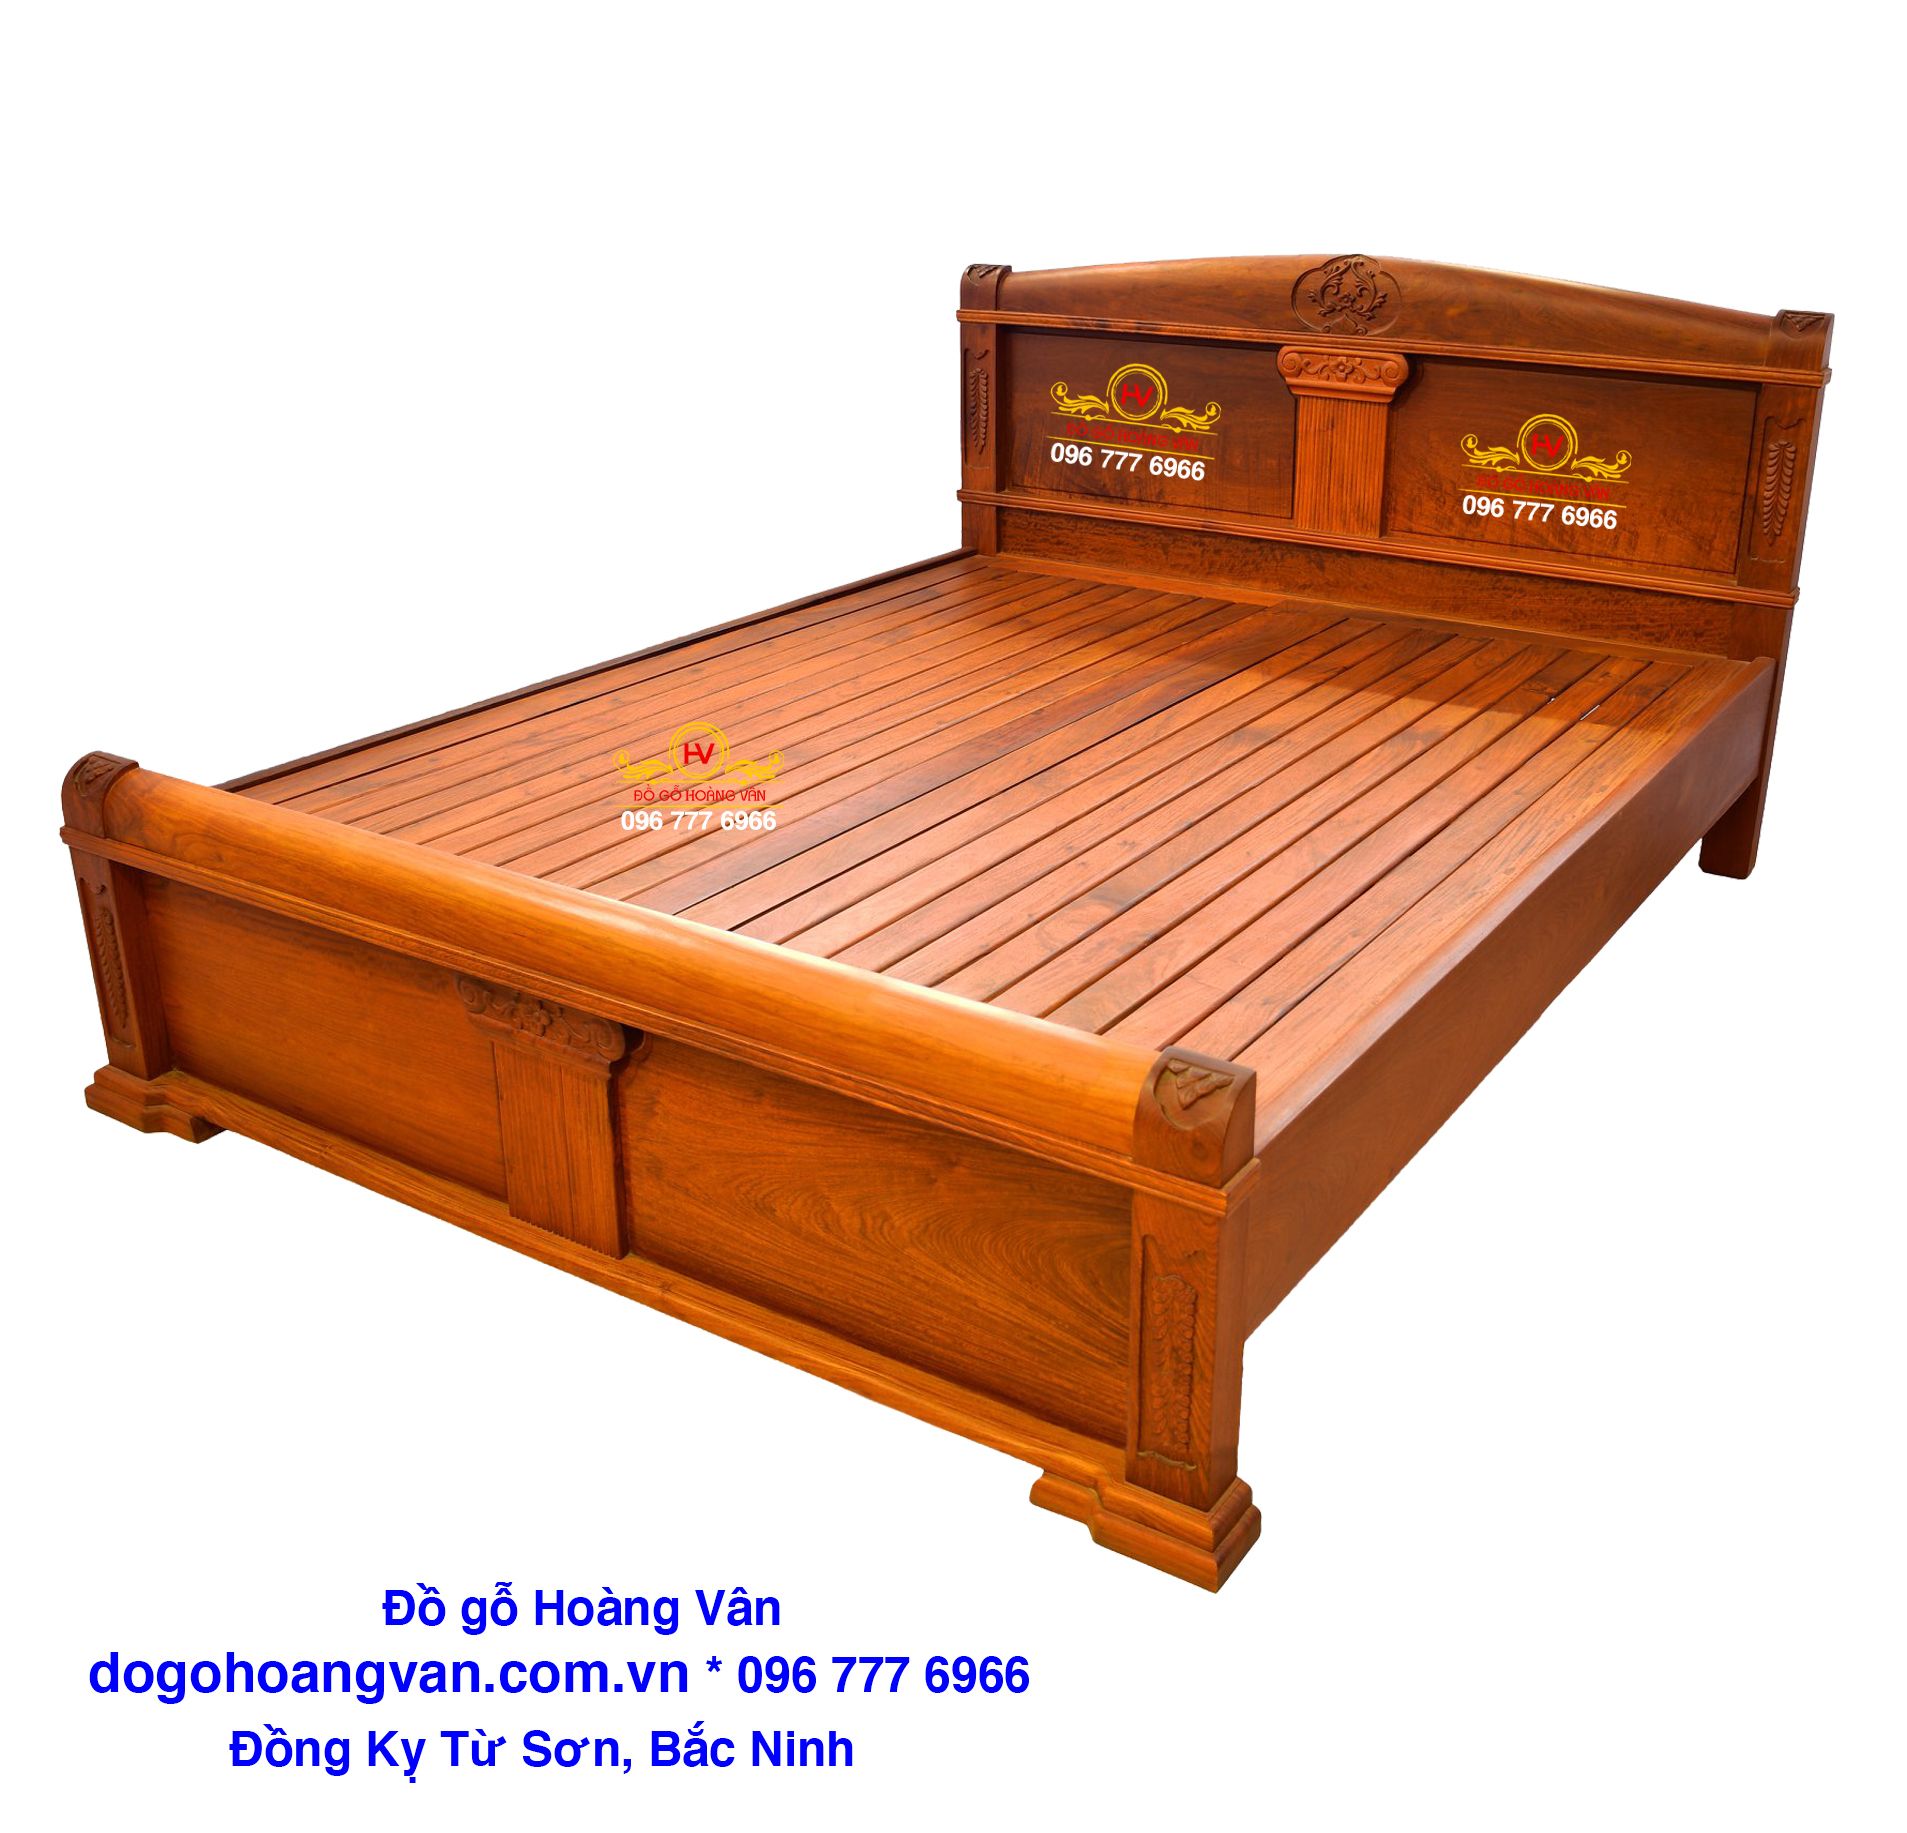 Siêu thị đồ gỗ mang đến cho bạn một loạt các mẫu giường ngủ đẹp nhất gỗ tốt với giá cả hợp lý nhất. Với GN139, bạn sẽ được trải nghiệm chất lượng gỗ tốt nhất mà không phải trả một khoản chi phí lớn. Lựa chọn giường ngủ đẹp nhất tại siêu thị của chúng tôi và biến giấc ngủ của bạn trở nên tốt hơn bao giờ hết.